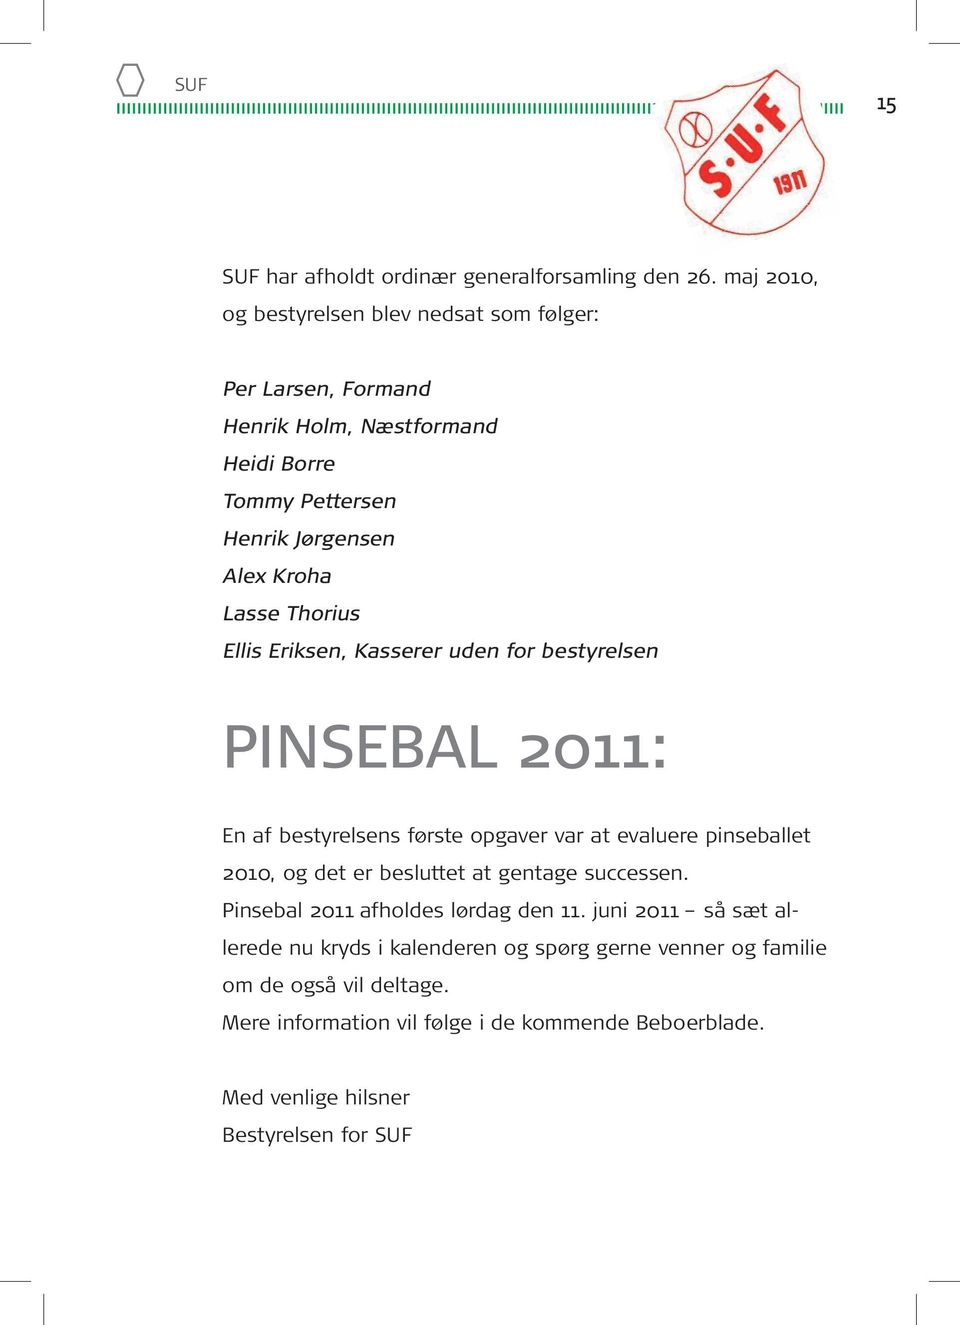 Thorius Ellis Eriksen, Kasserer uden for bestyrelsen PINSEBAL 2011: En af bestyrelsens første opgaver var at evaluere pinseballet 2010, og det er besluttet